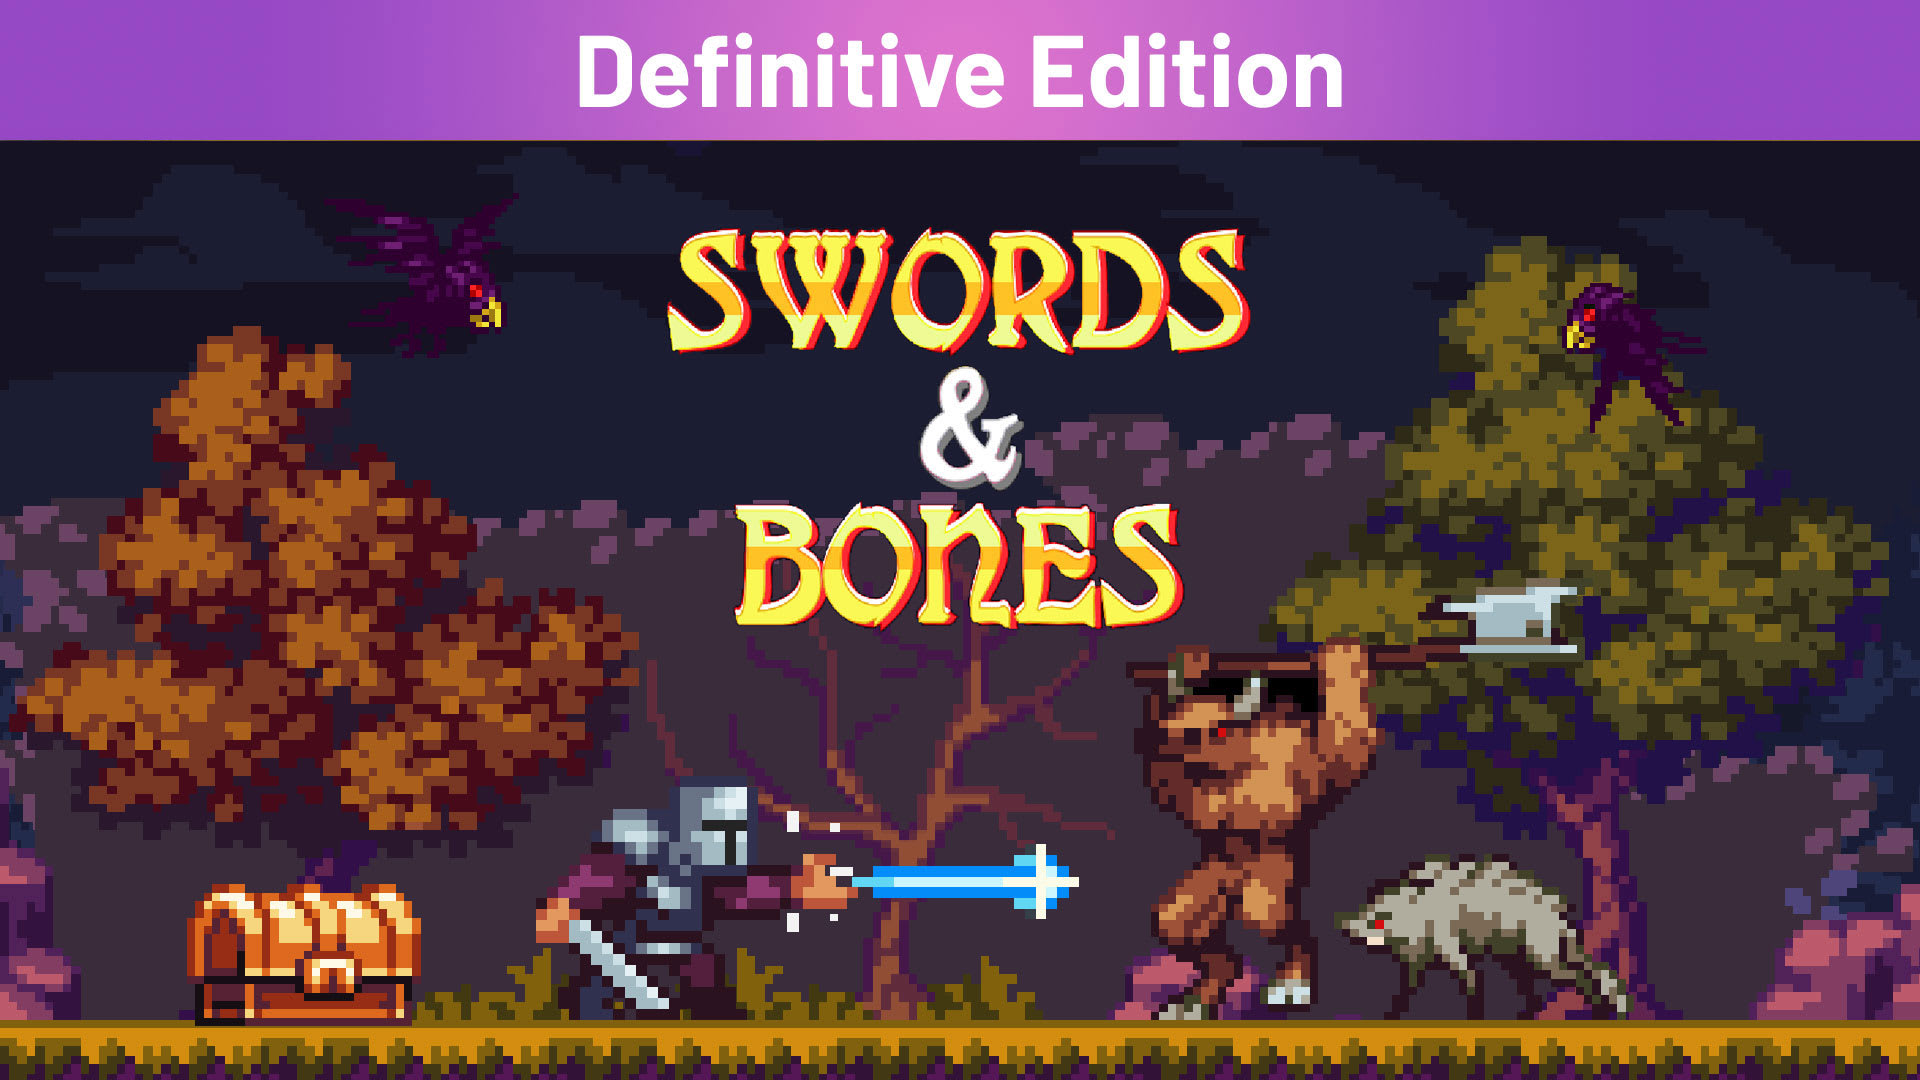 Swords & Bones Definitive Edition